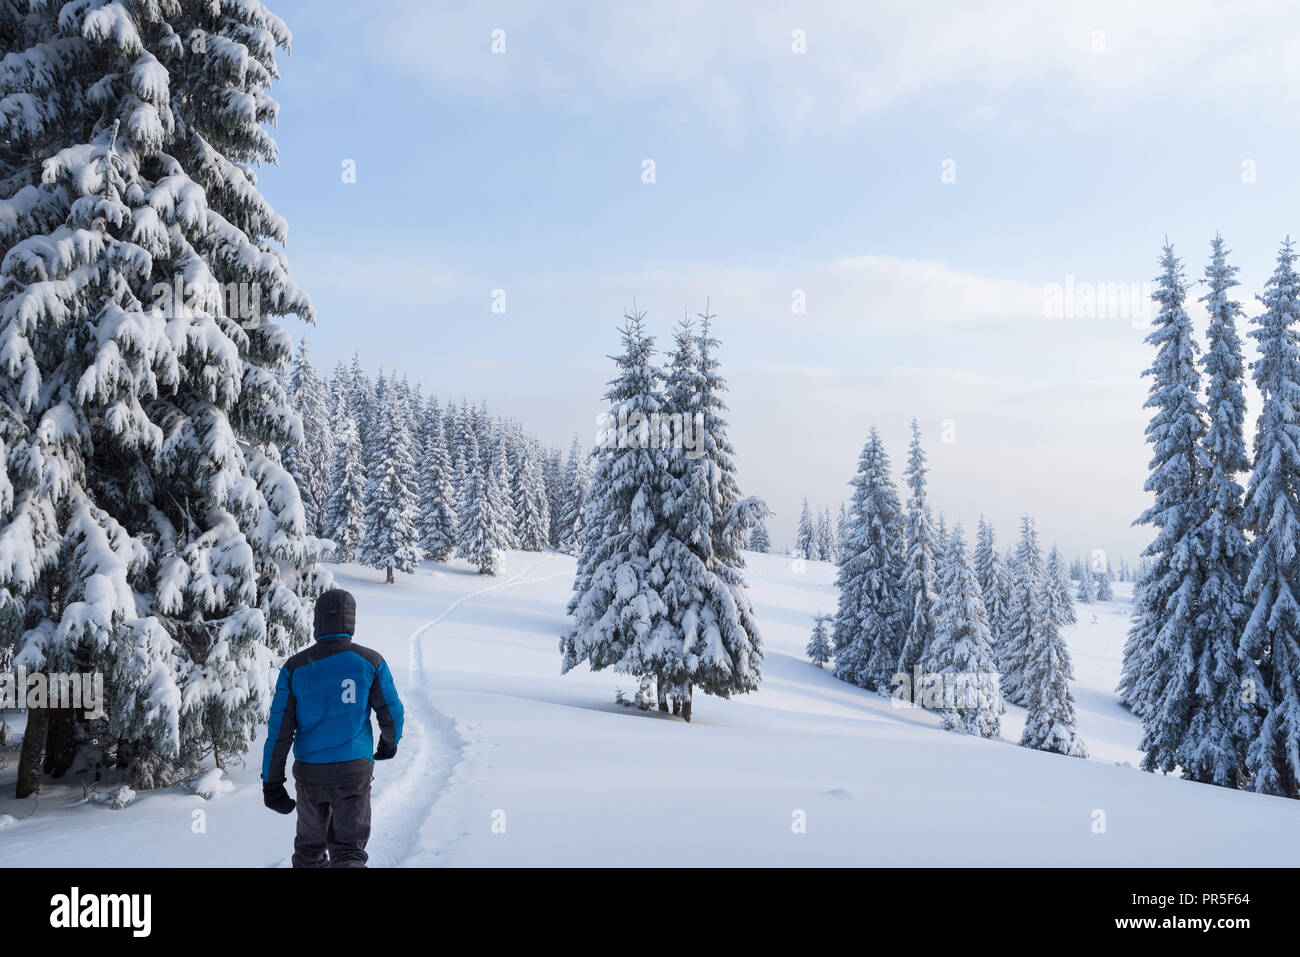 Un gars dans un Down jacket promenades dans une forêt de sapins enneigés. Paysage d'hiver avec un sentier dans les montagnes Banque D'Images